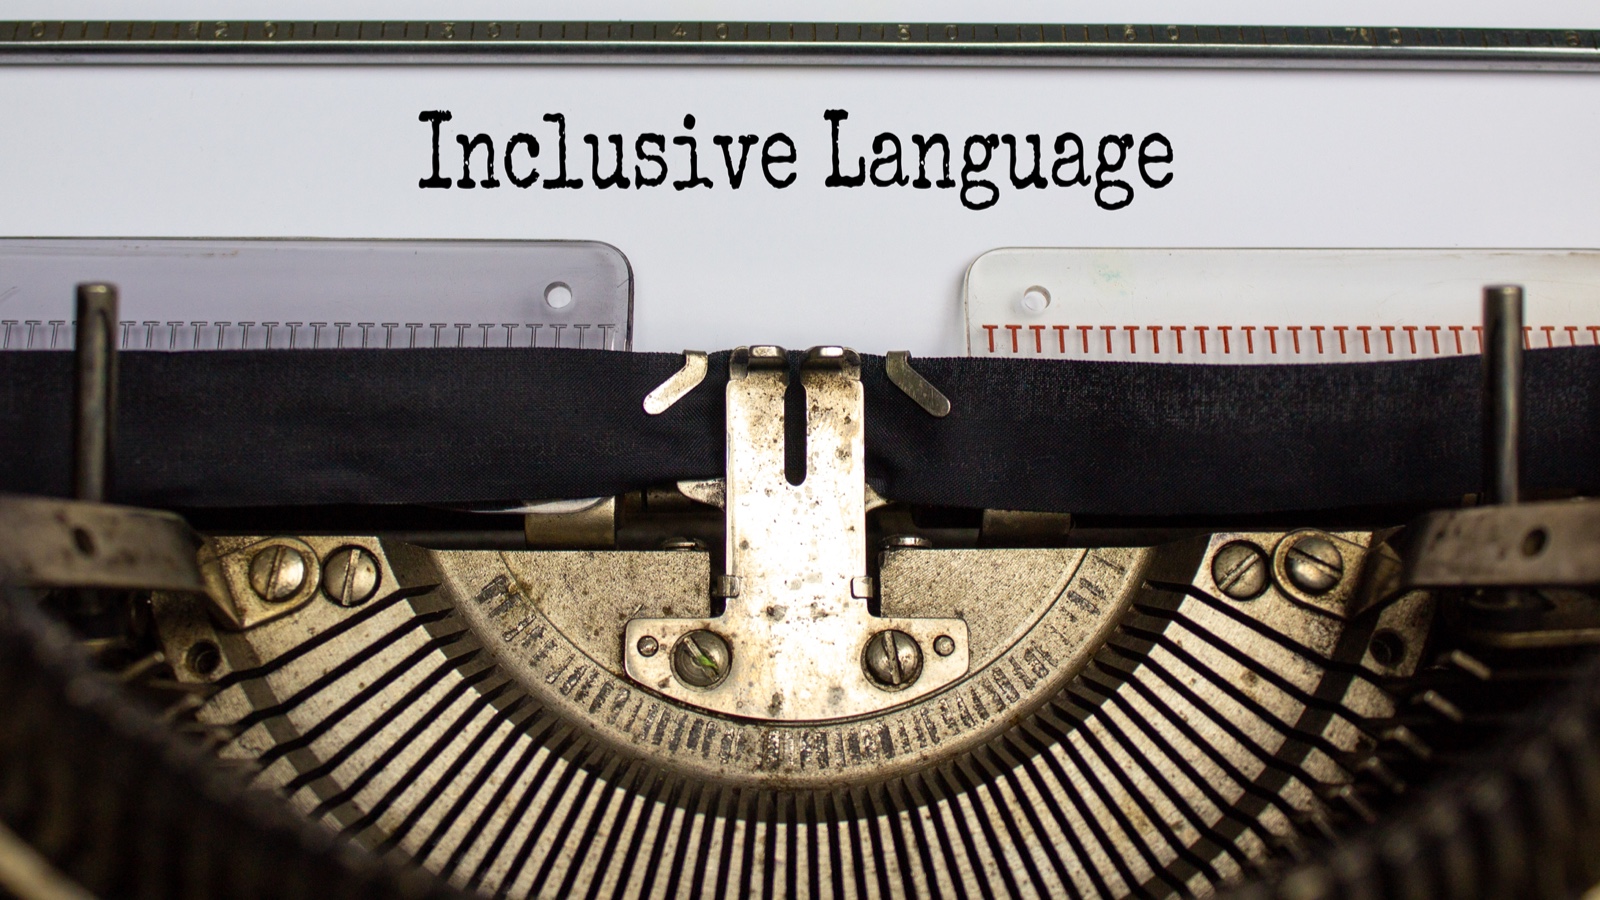 Bringing Inclusive Language into IT